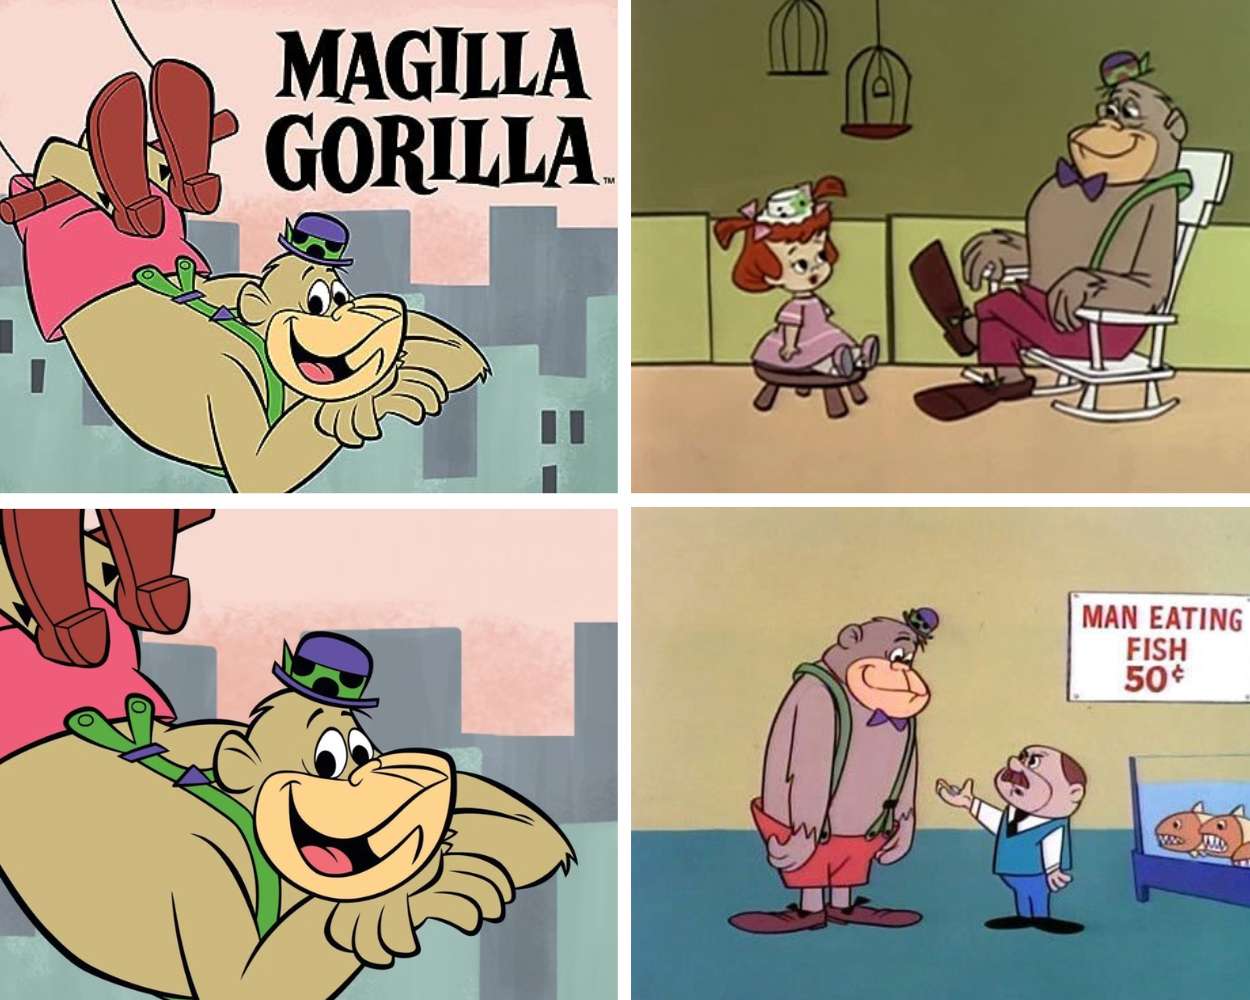 Magilla Gorilla